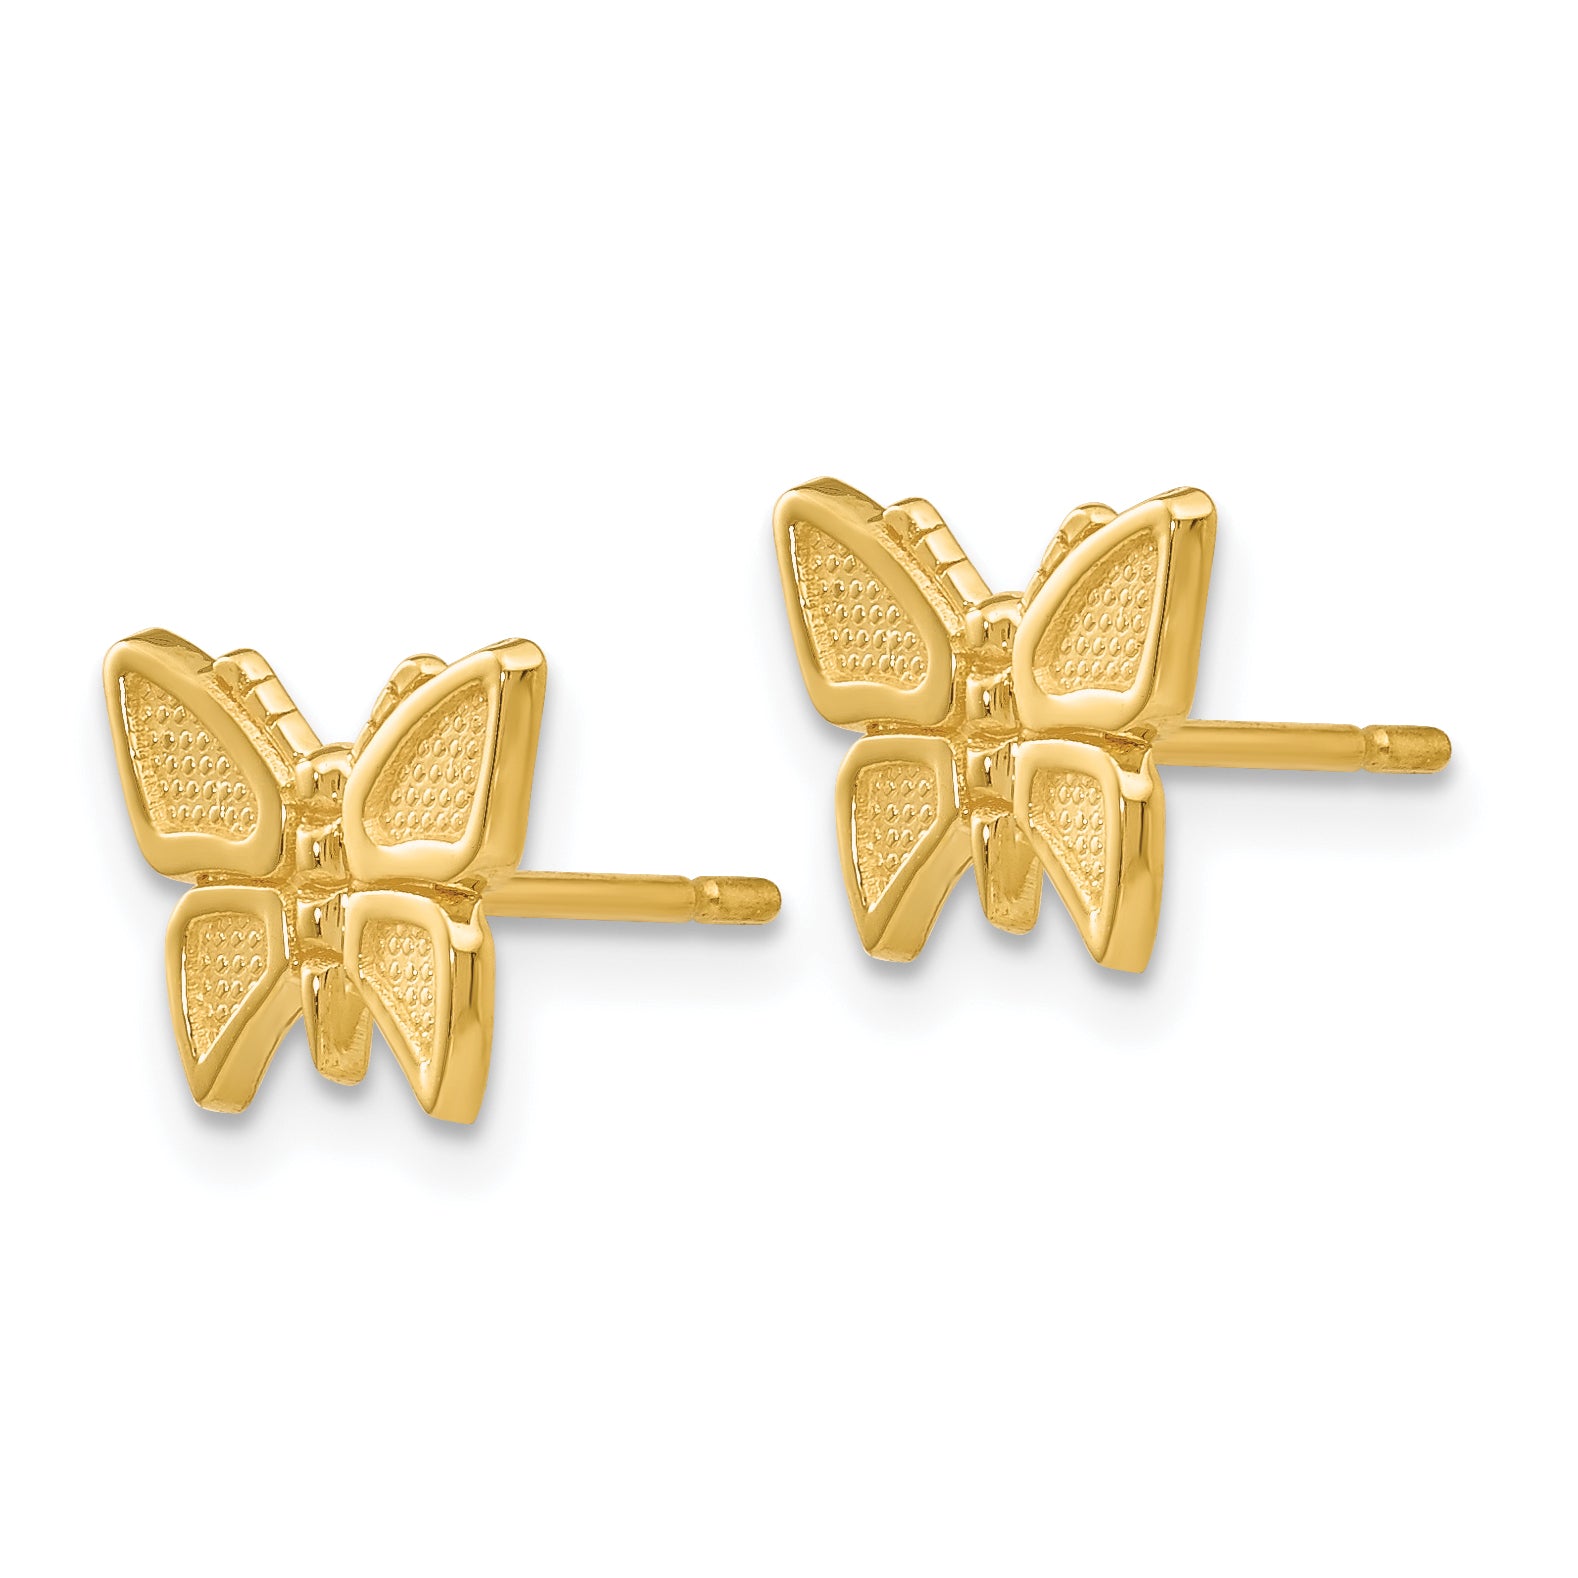 10k Polished Butterfly Post Earrings